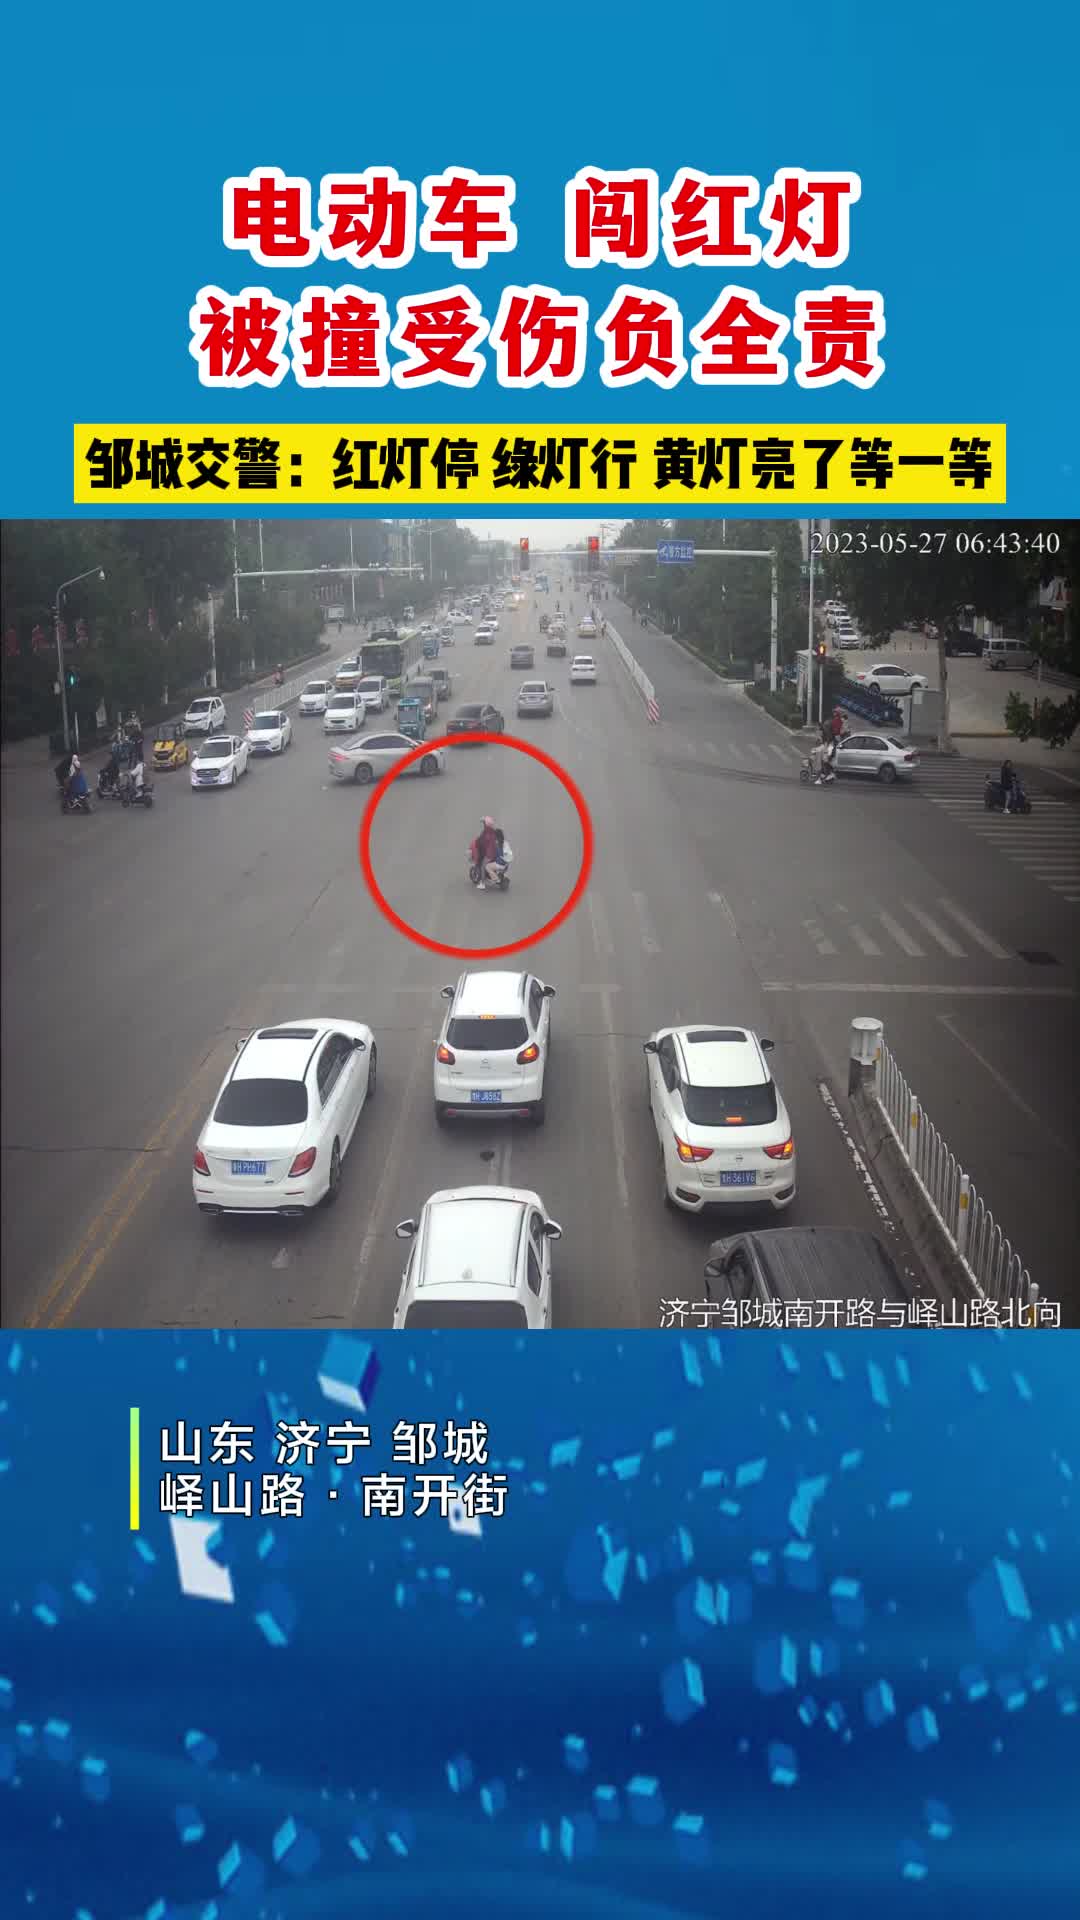 【邹视频·新闻】29秒|电动车闯红灯  被撞受伤负全责